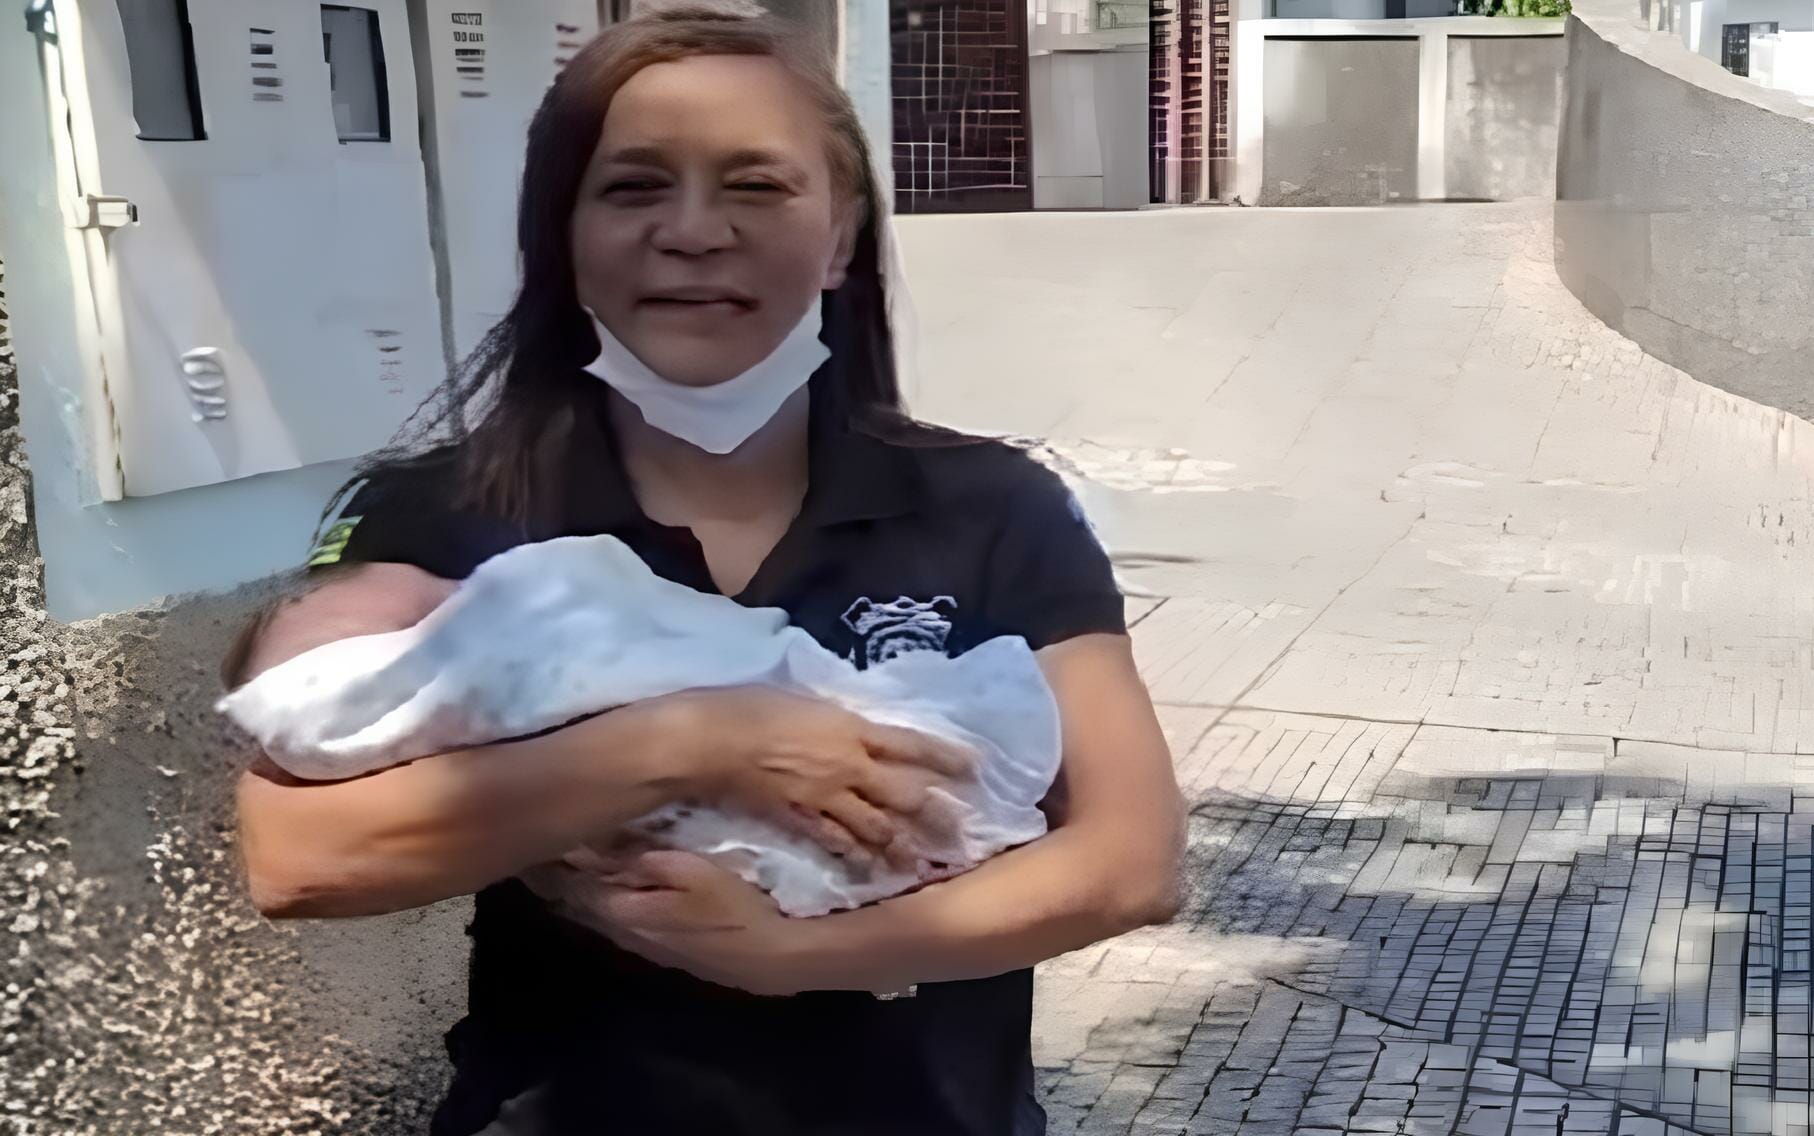 Bebê De Um Mês É Abandonado Em Hospital Após Ser Internado